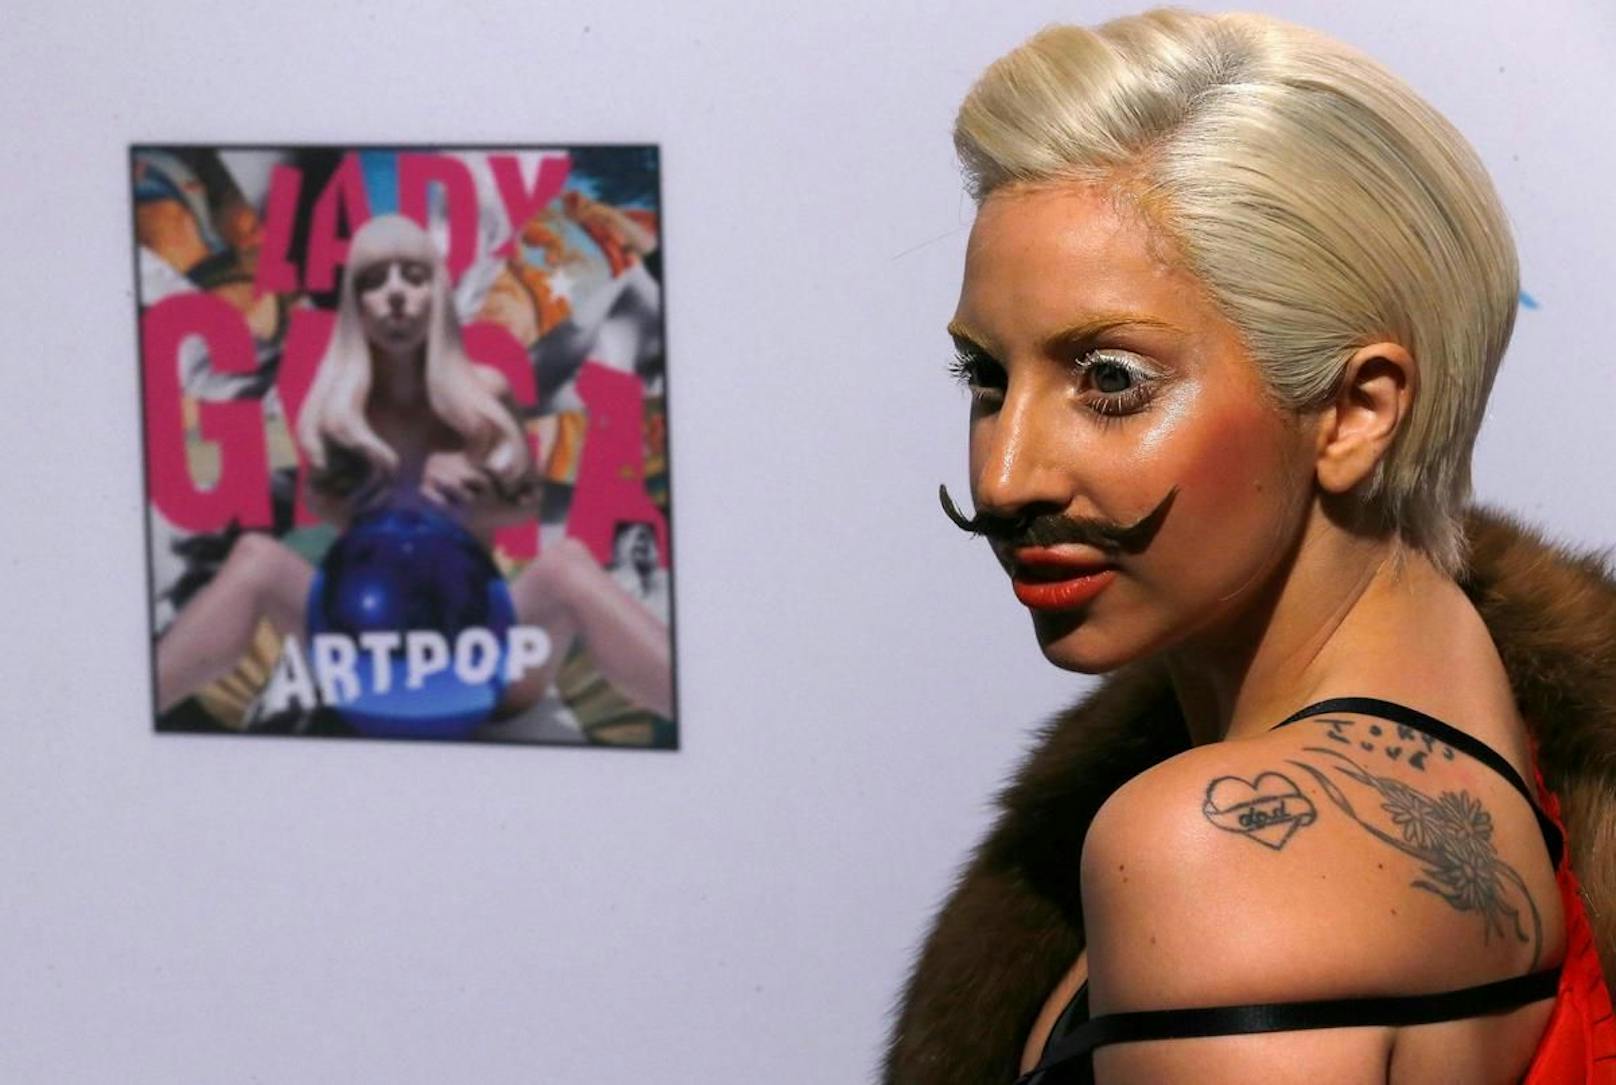 Immer wieder lassen sich im Berghain auch Promis blicken, wie 2013 Lady Gaga bei der Promotion ihres neuen Albums.